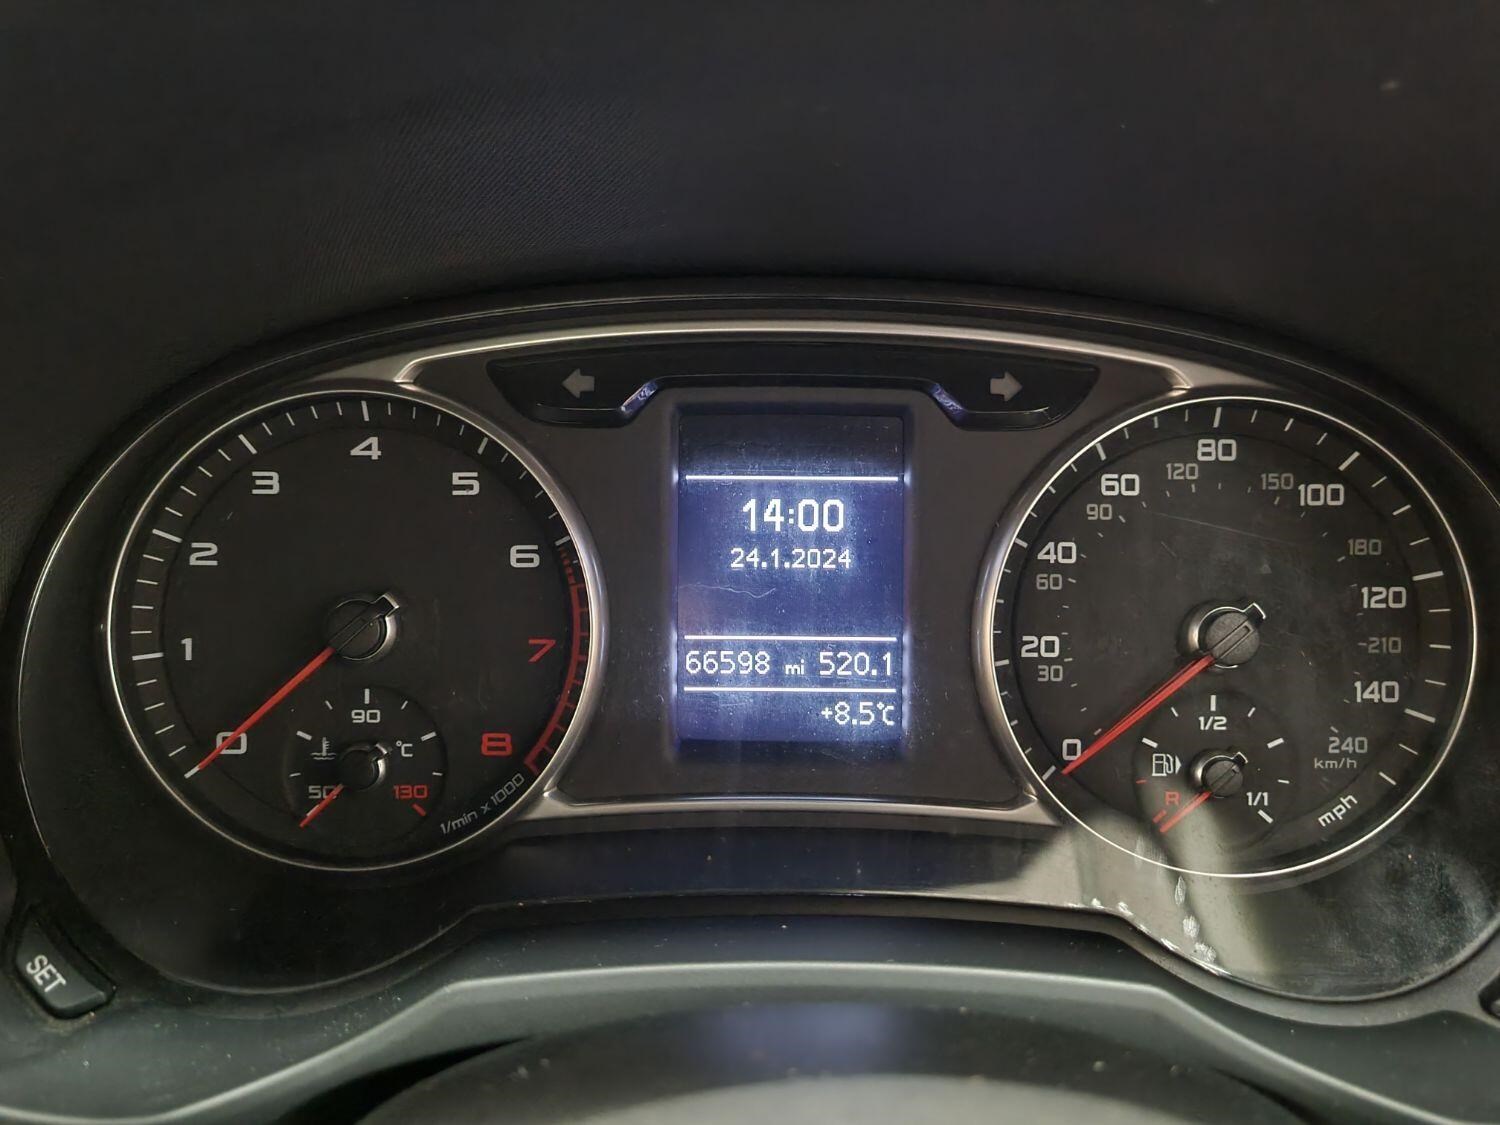 Audi A1 Listing Image